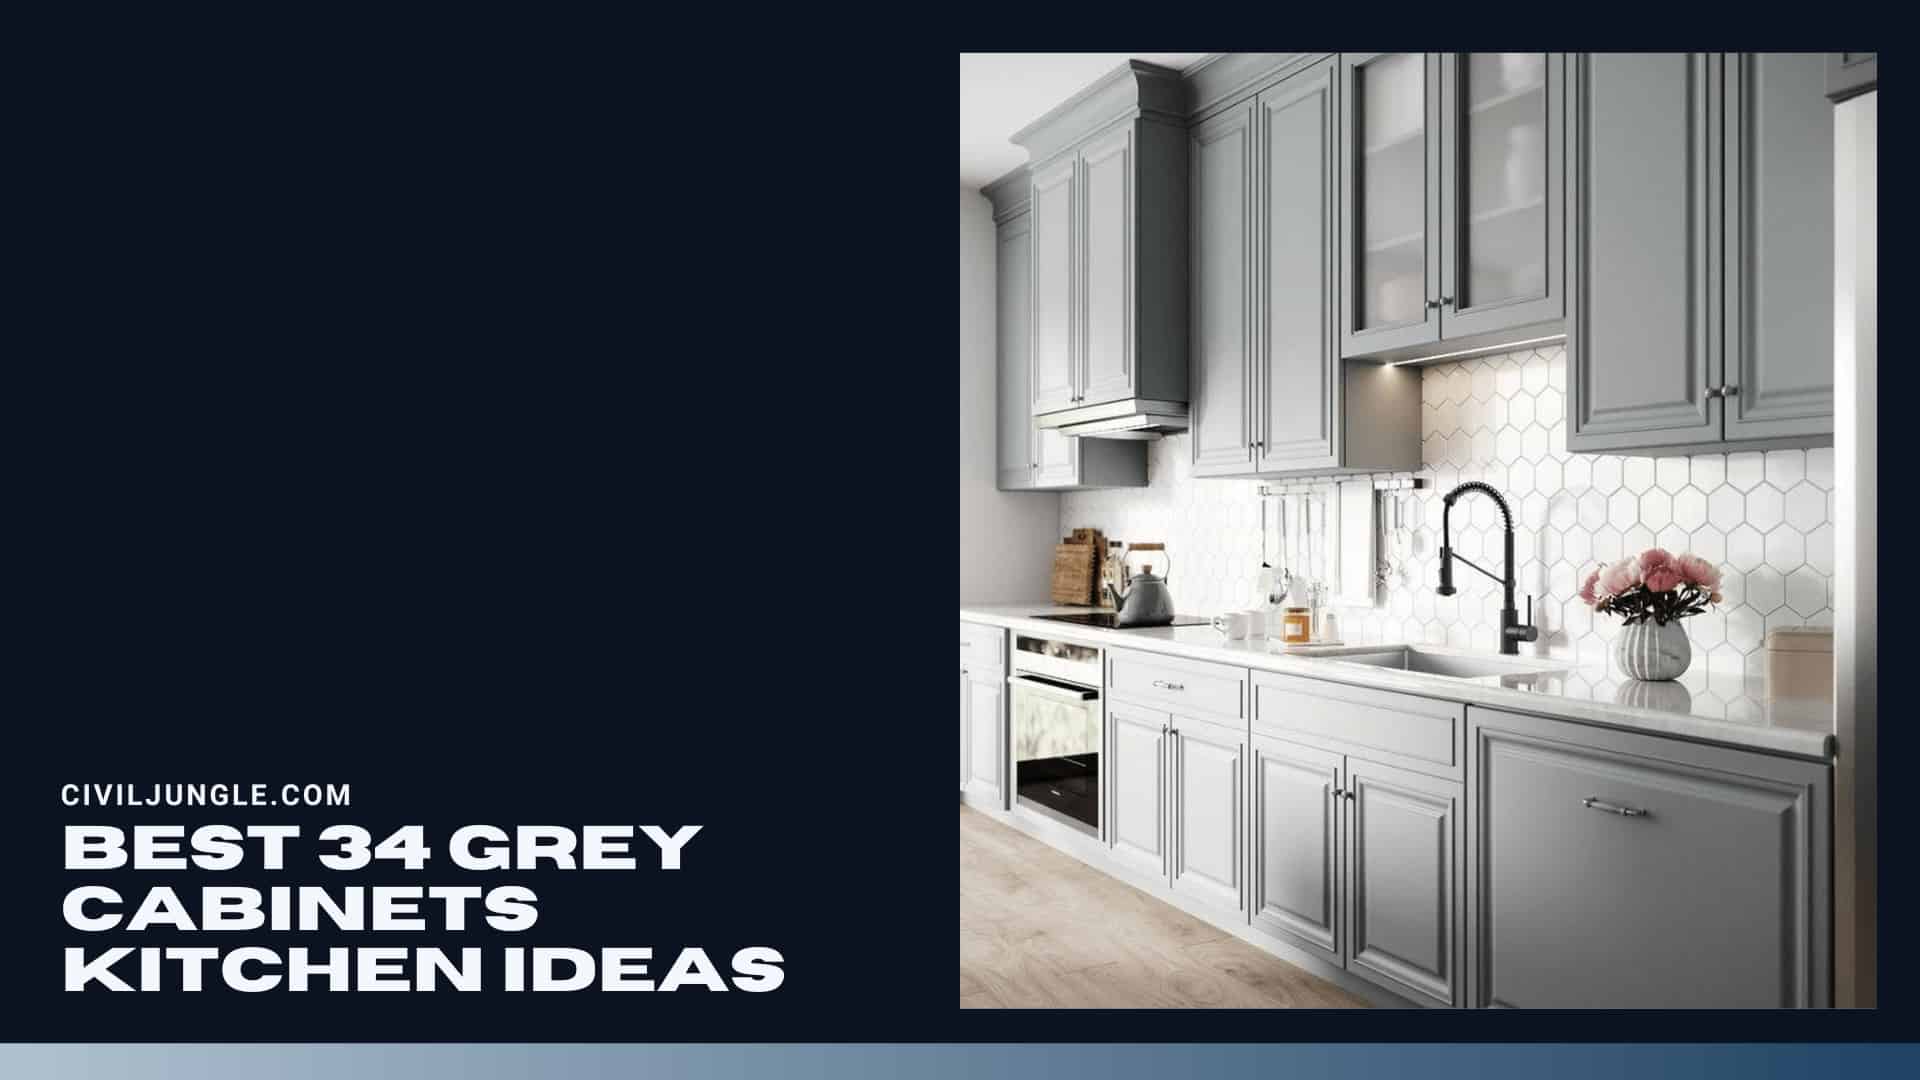 Best 34 Grey Cabinets Kitchen Ideas